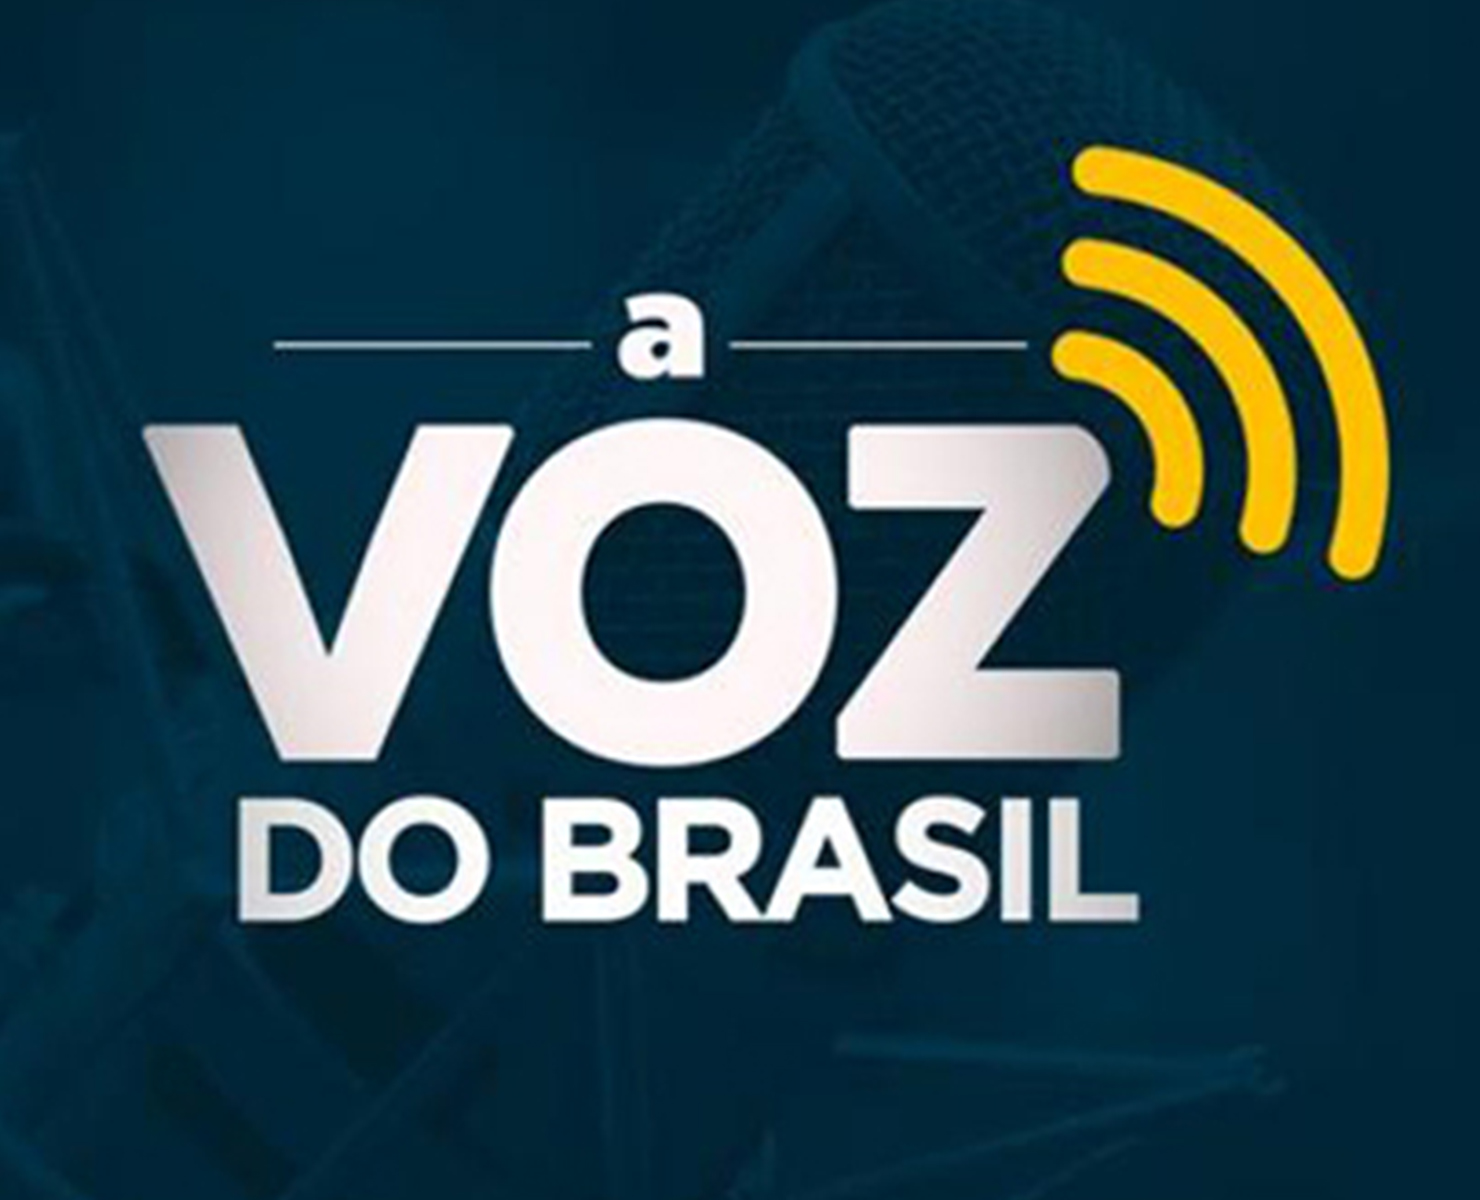 VOZ DO BRASIL: PROGRAMA ESTÁ RECEBENDO SUGESTÕES PARA MUDANÇAS